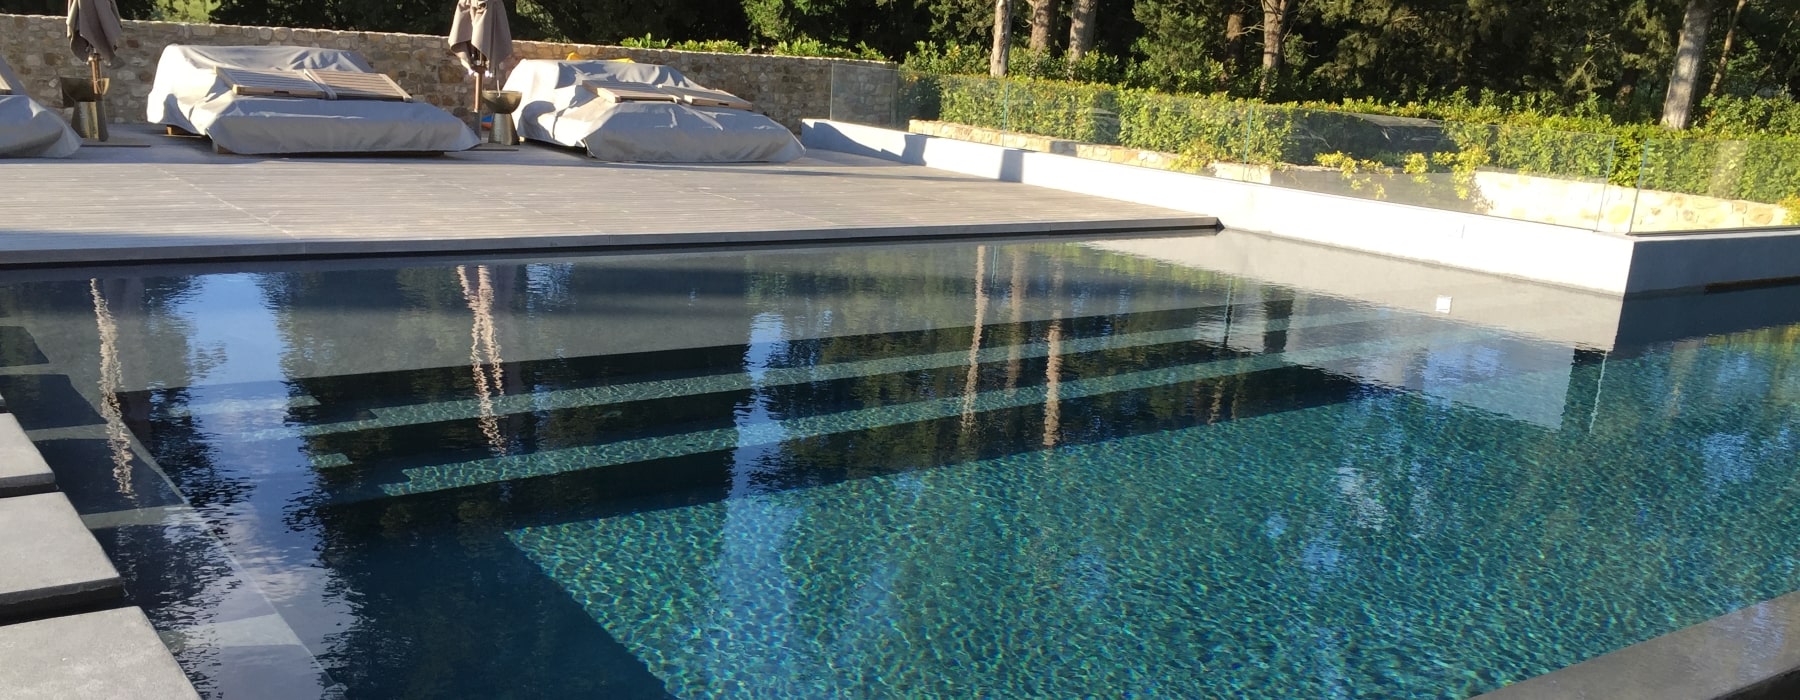 Realizzazione piscine di design in Toscana by Gardenpoo